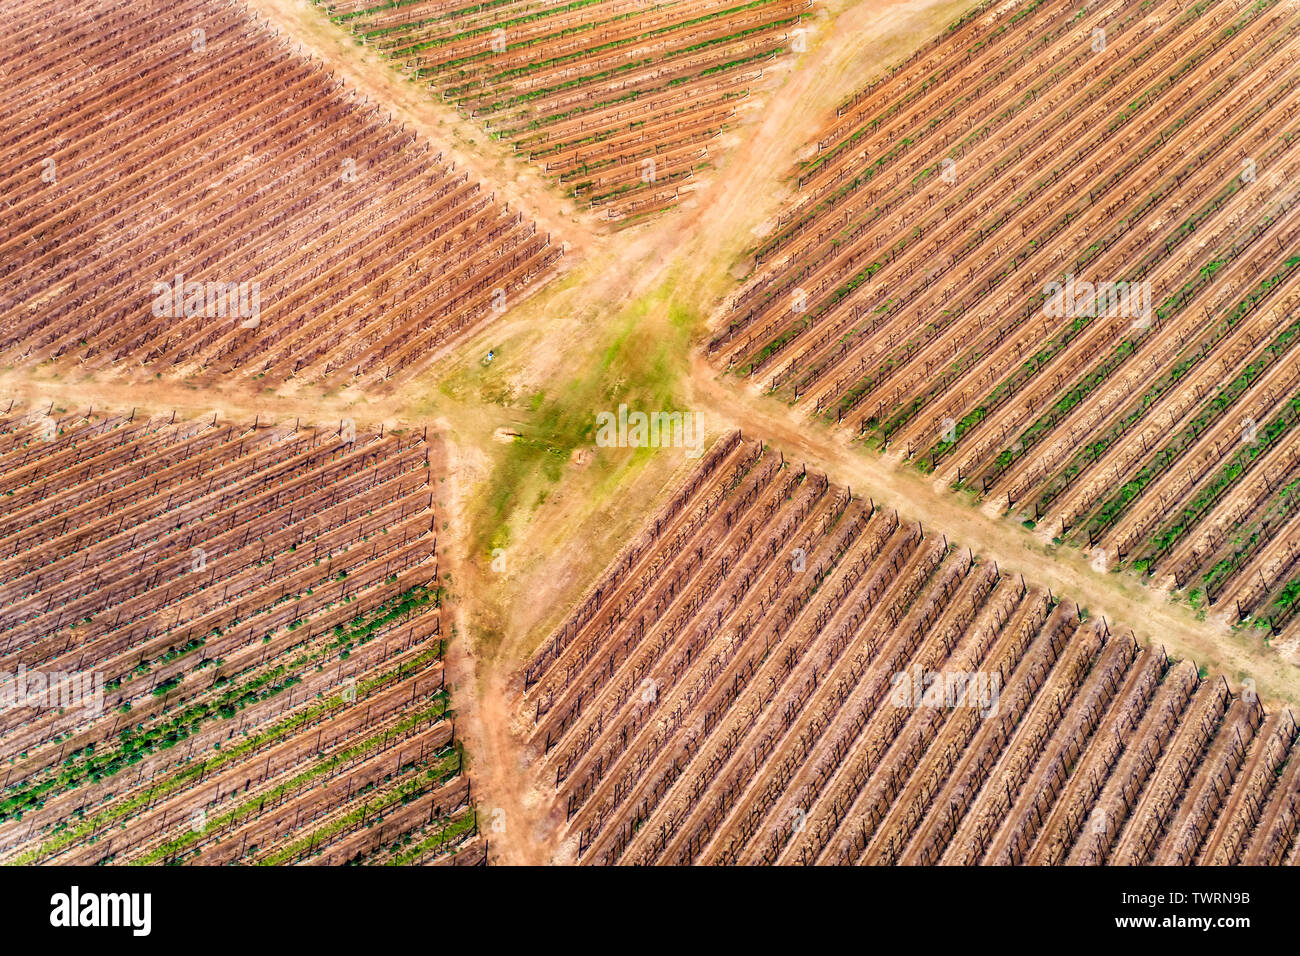 Entwickelte Landwirtschaft Bauernhof mit Reihen von Weinbergen auf cltivated Patches des Landes in der Weinregion Australiens - Hunter Valley. Stockfoto